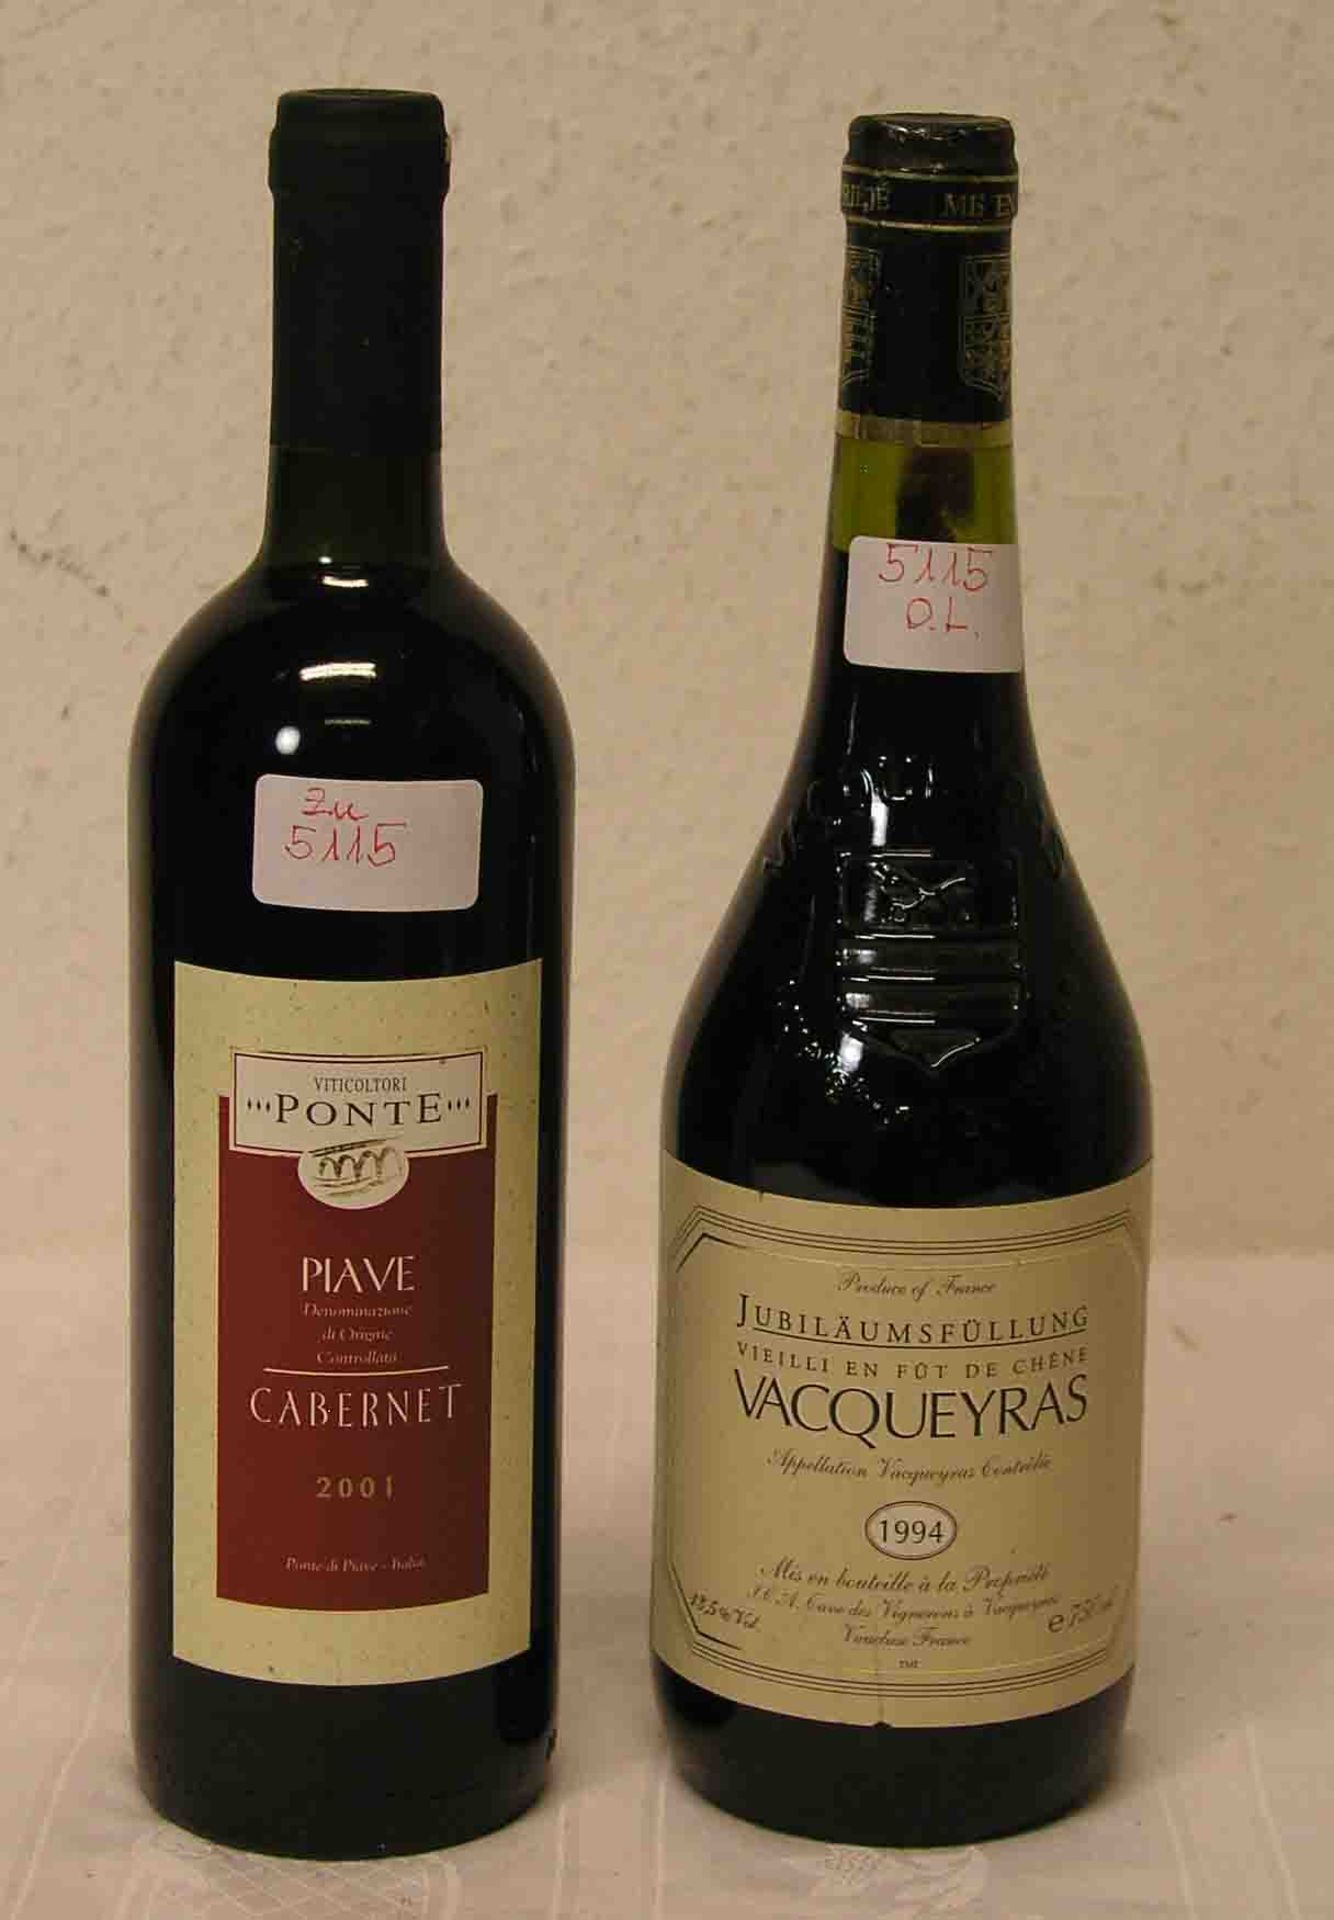 Zwei Flaschen Rotwein. Dabei: Vacqueyros, Jubiläumsfüllung, 1994 und Piave, Cabernet 2001,<b